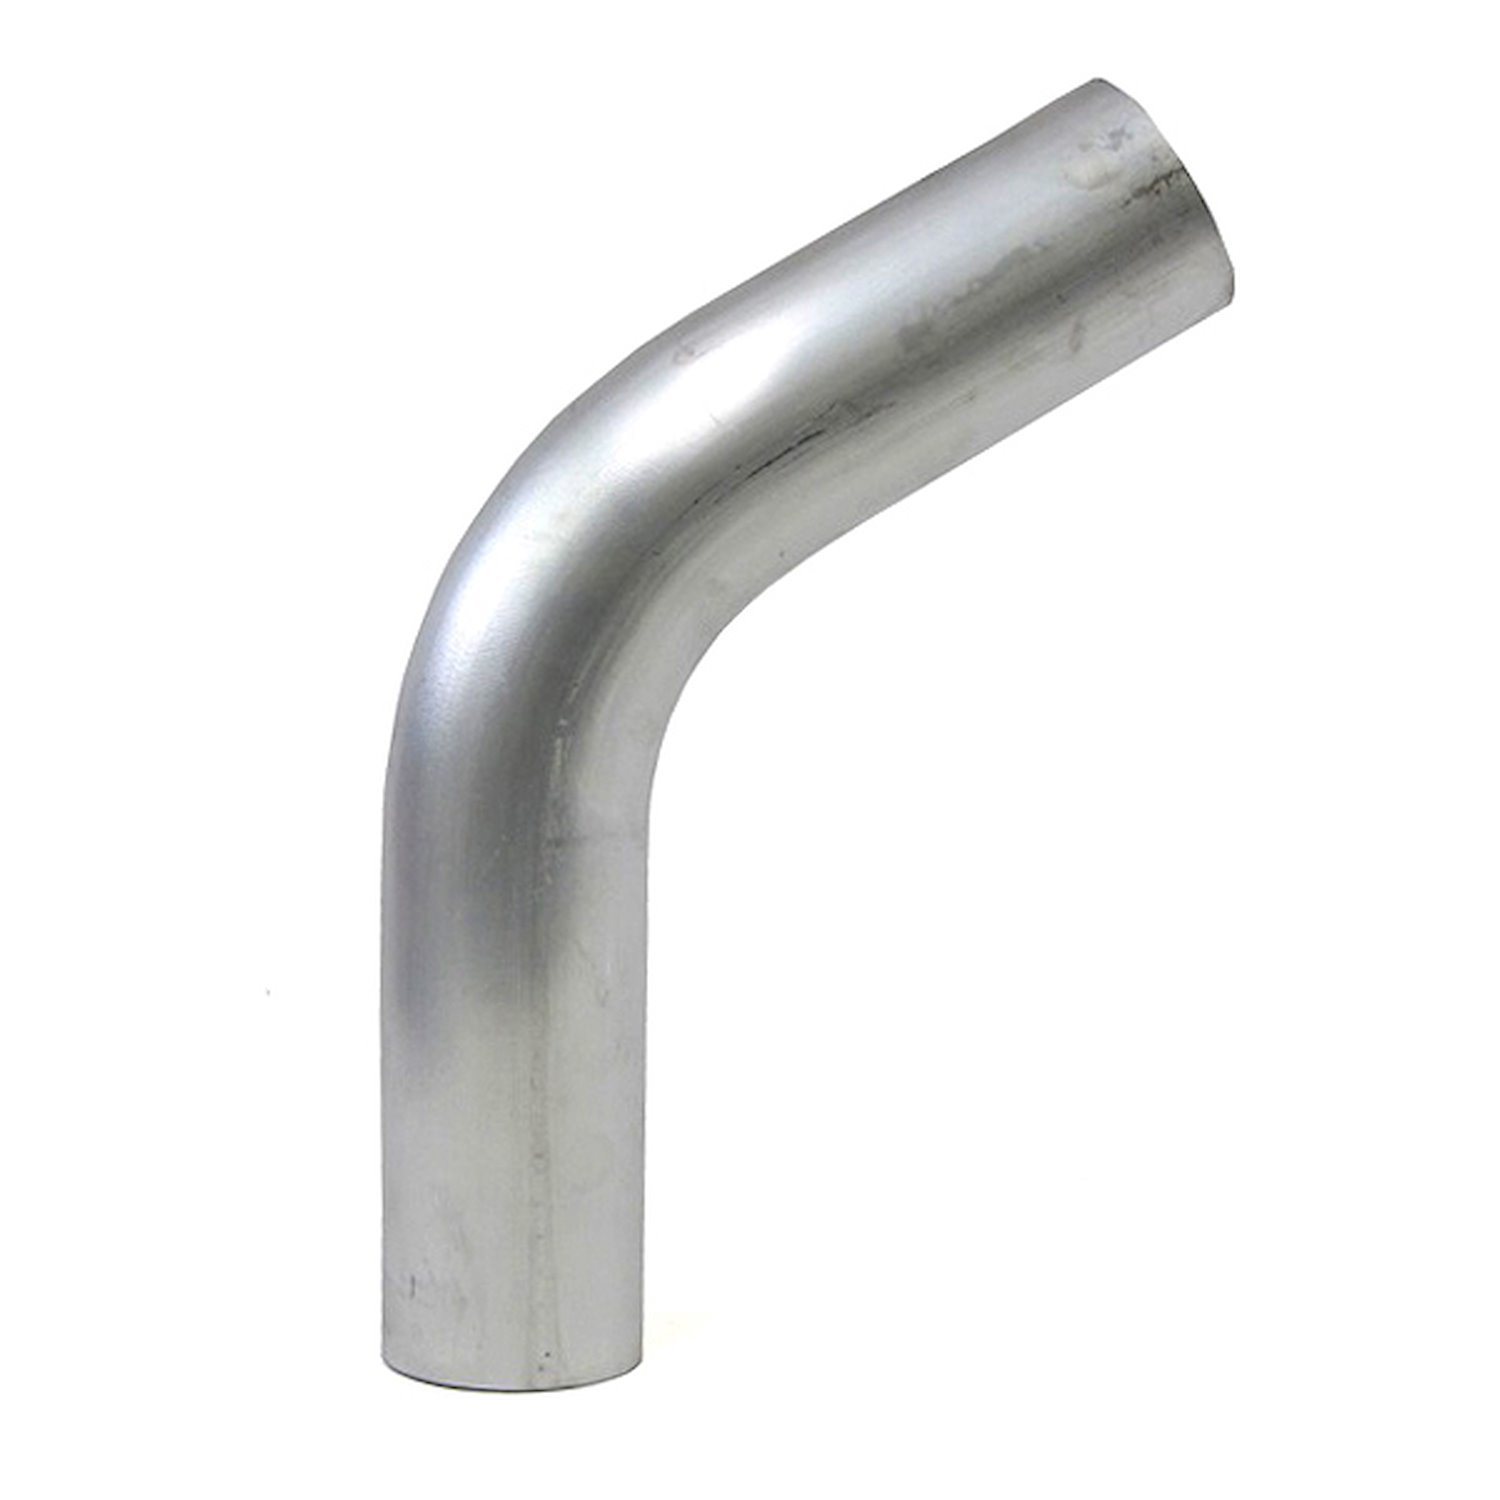 AT60-400-CLR-55 Aluminum Elbow Tube, 6061 Aluminum, 60-Degree Bend Elbow Tubing, 4 in. OD, Large Radius, 5-1/2 in. CLR